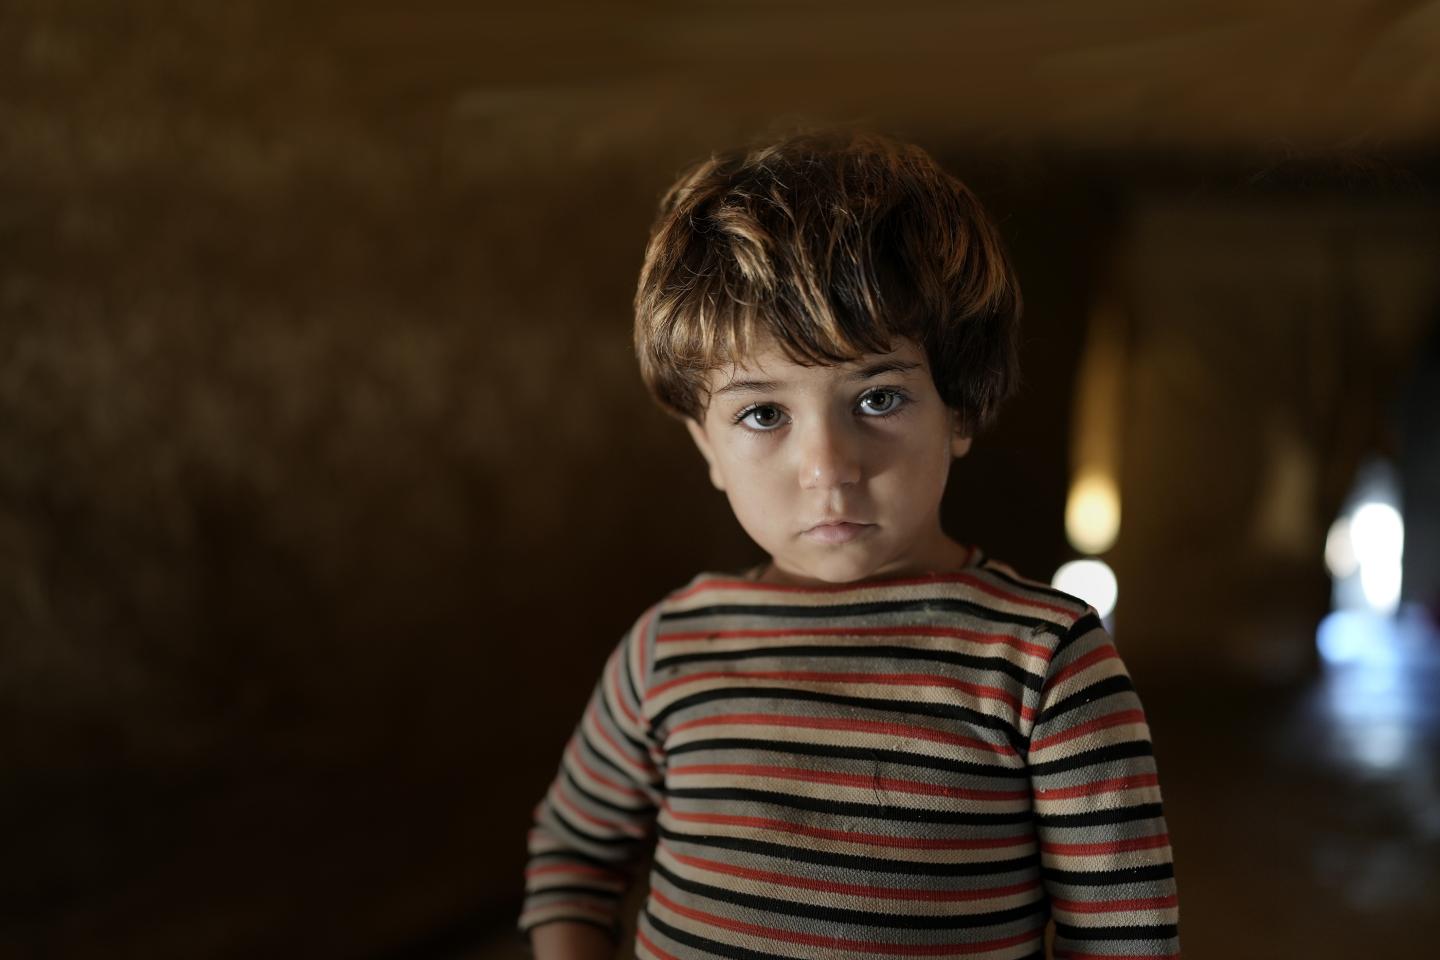 البقاء على قيد الحياة بدون أساسيّات العيش: تفاقم تأثيرات الأزمة اللبنانية على الأطفال